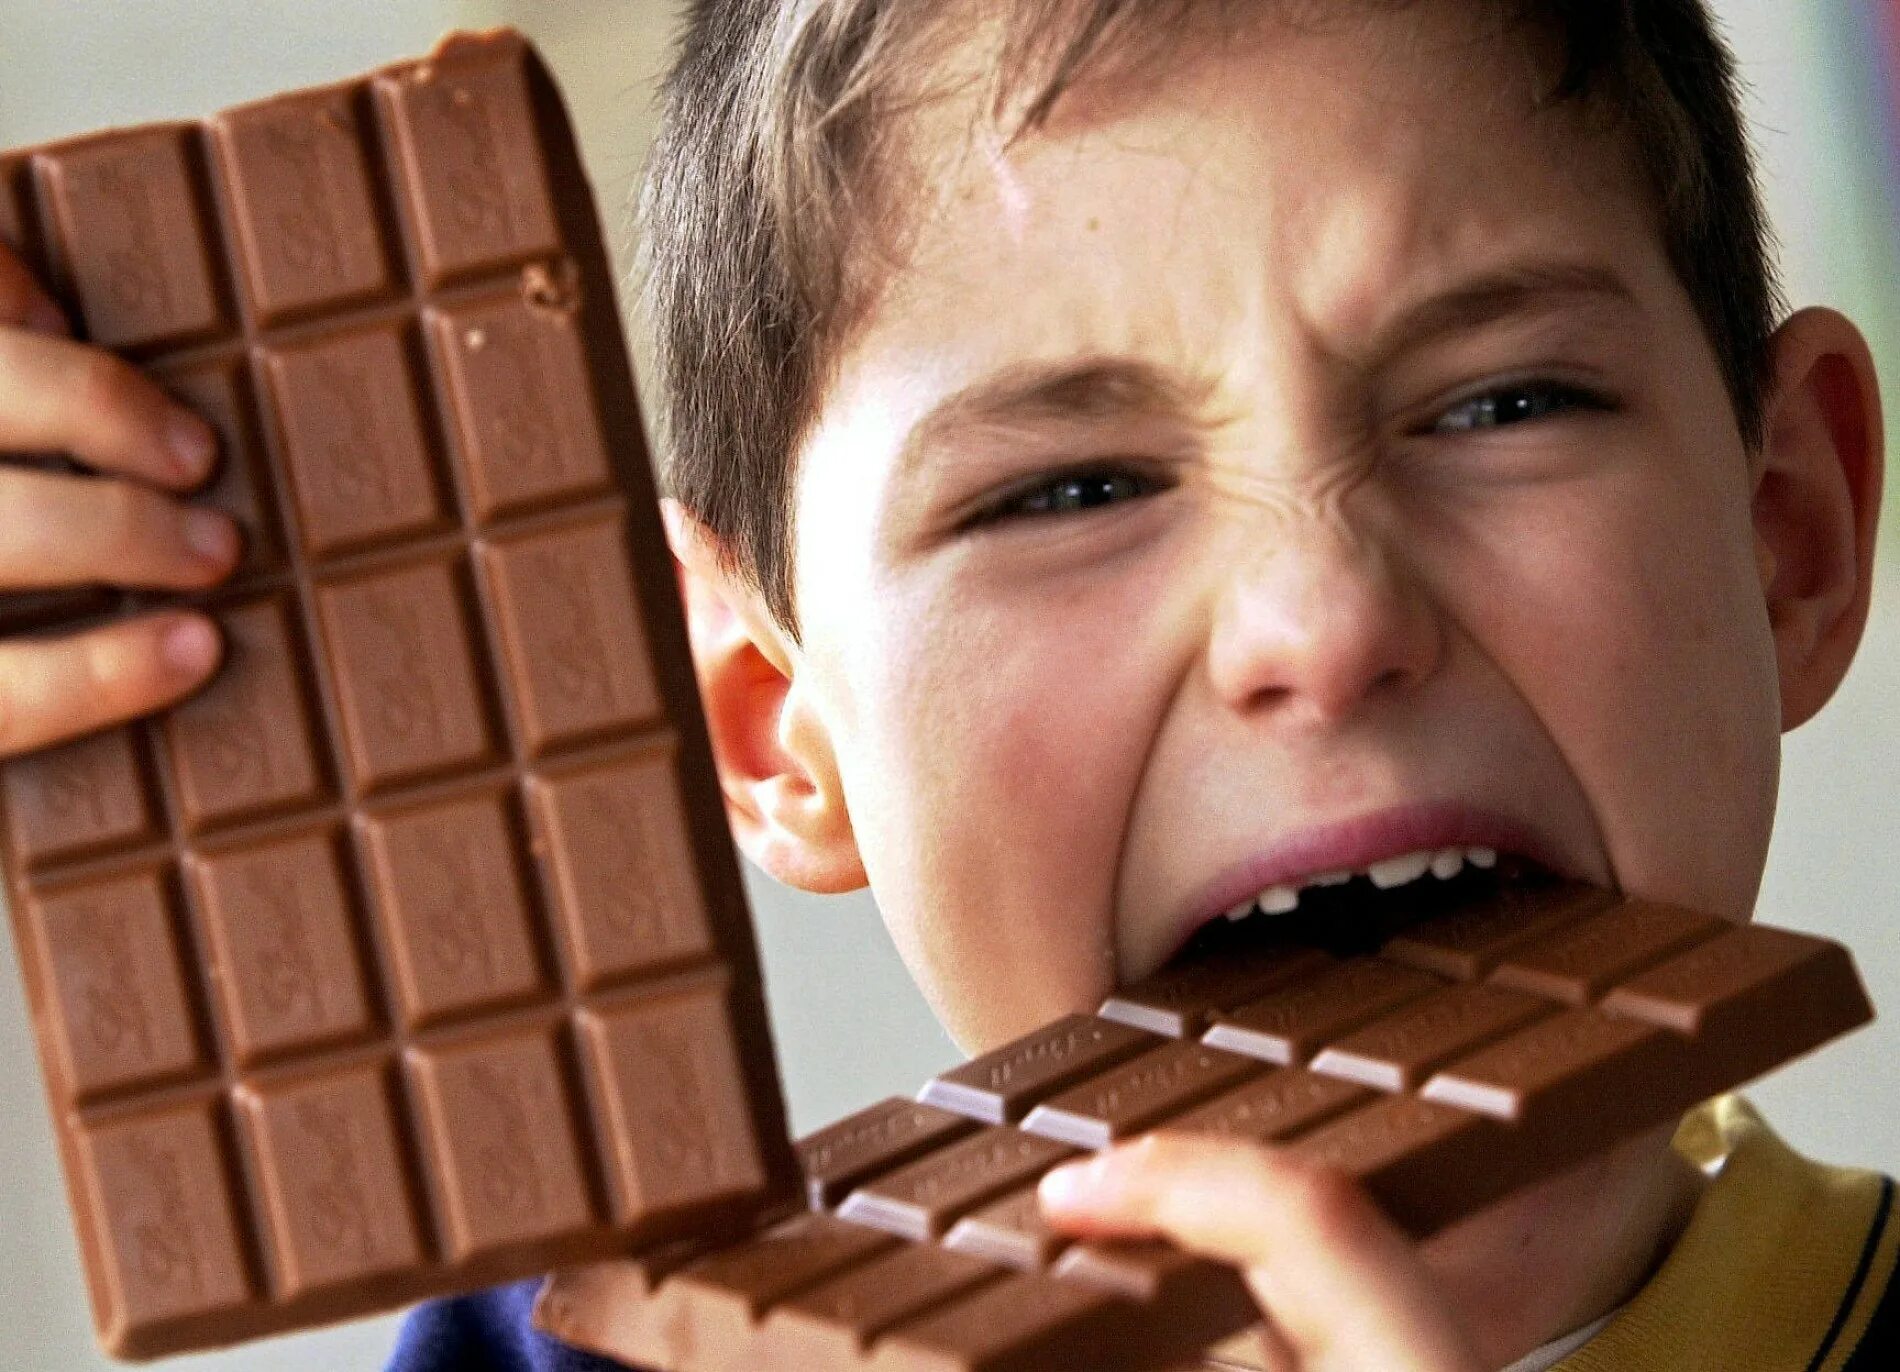 Видео с шоколадкой. Шоколад. Конфеты детям. Поедание шоколада.